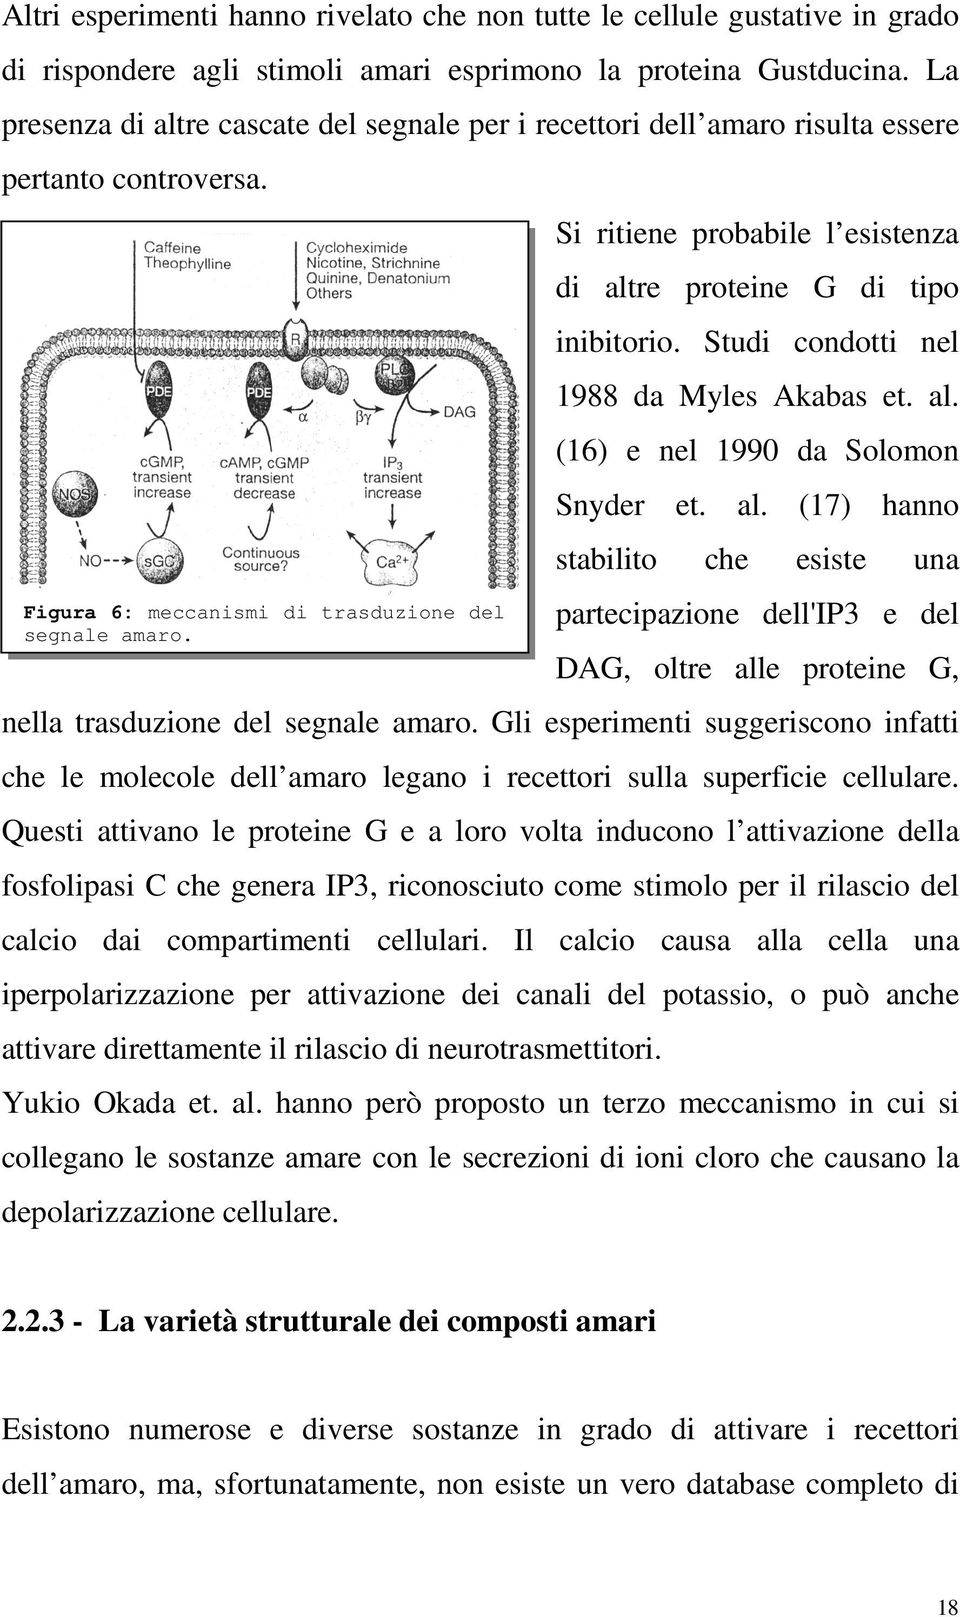 Si ritiene probabile l esistenza di altre proteine G di tipo inibitorio. Studi condotti nel 1988 da Myles Akabas et. al. (16) e nel 1990 da Solomon Snyder et. al. (17) hanno stabilito che esiste una partecipazione dell'ip3 e del DAG, oltre alle proteine G, nella trasduzione del segnale amaro.